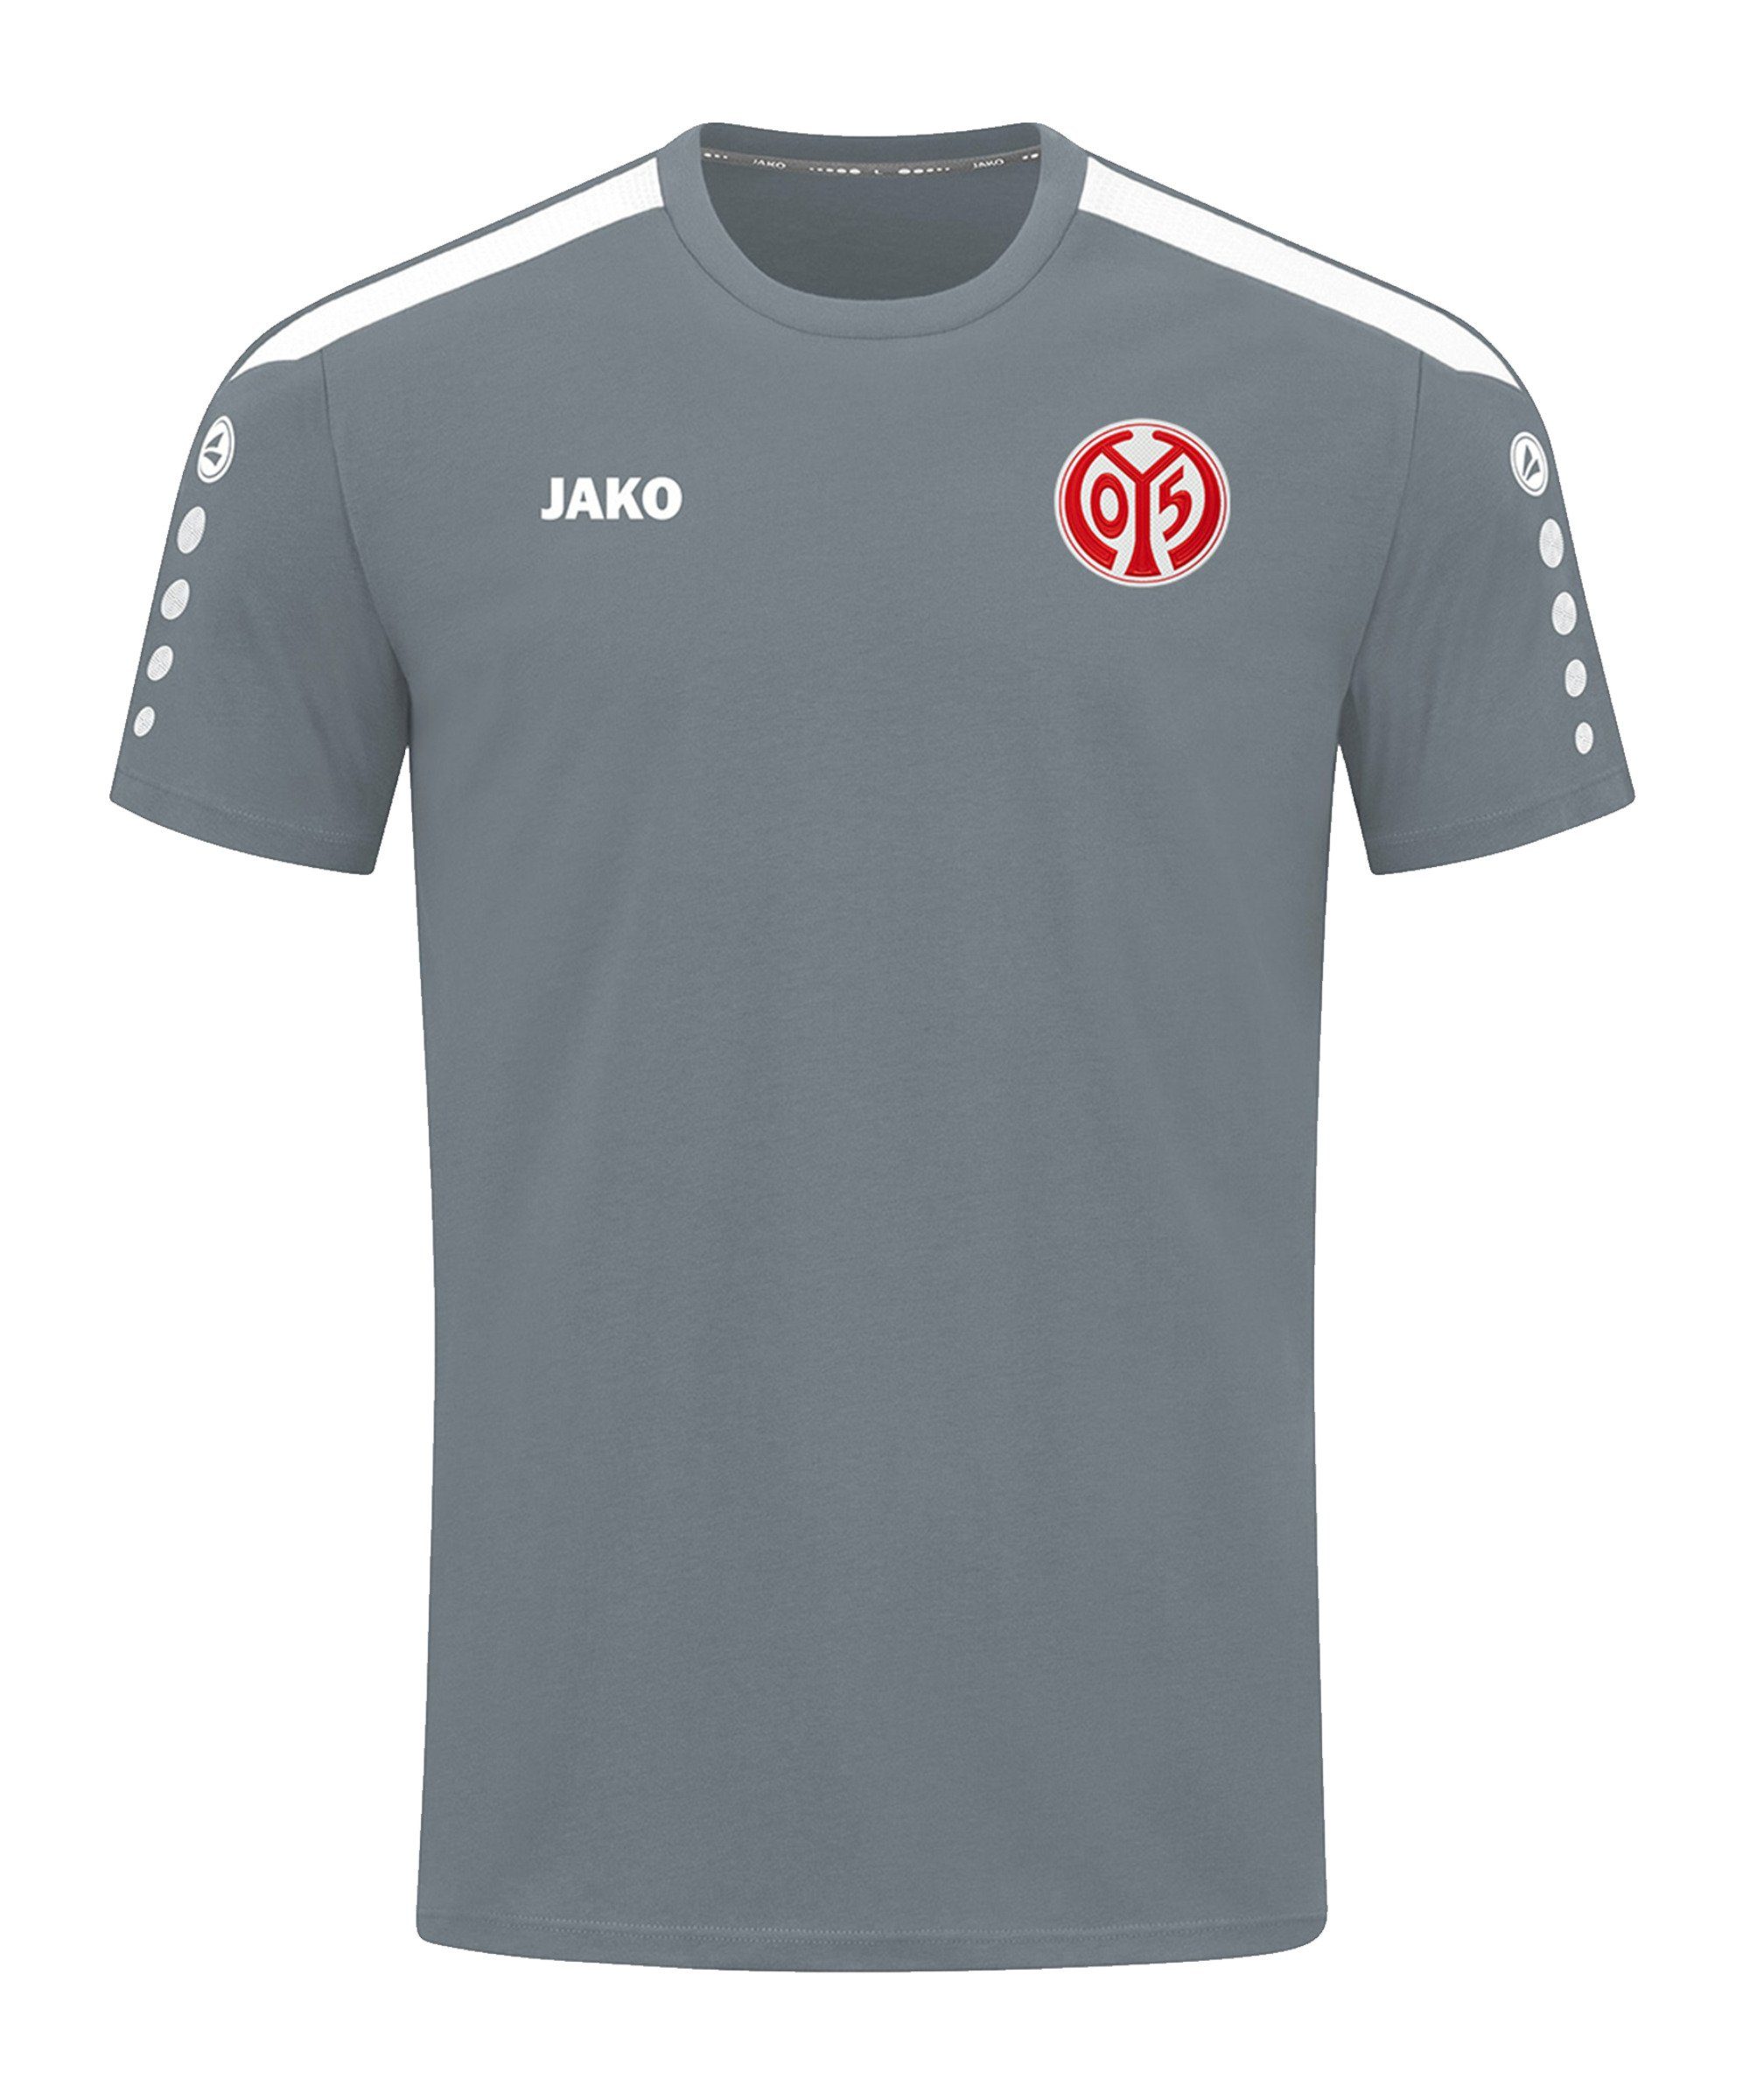 T-Shirt 1. Jako default FSV grau T-Shirt Power 05 Mainz